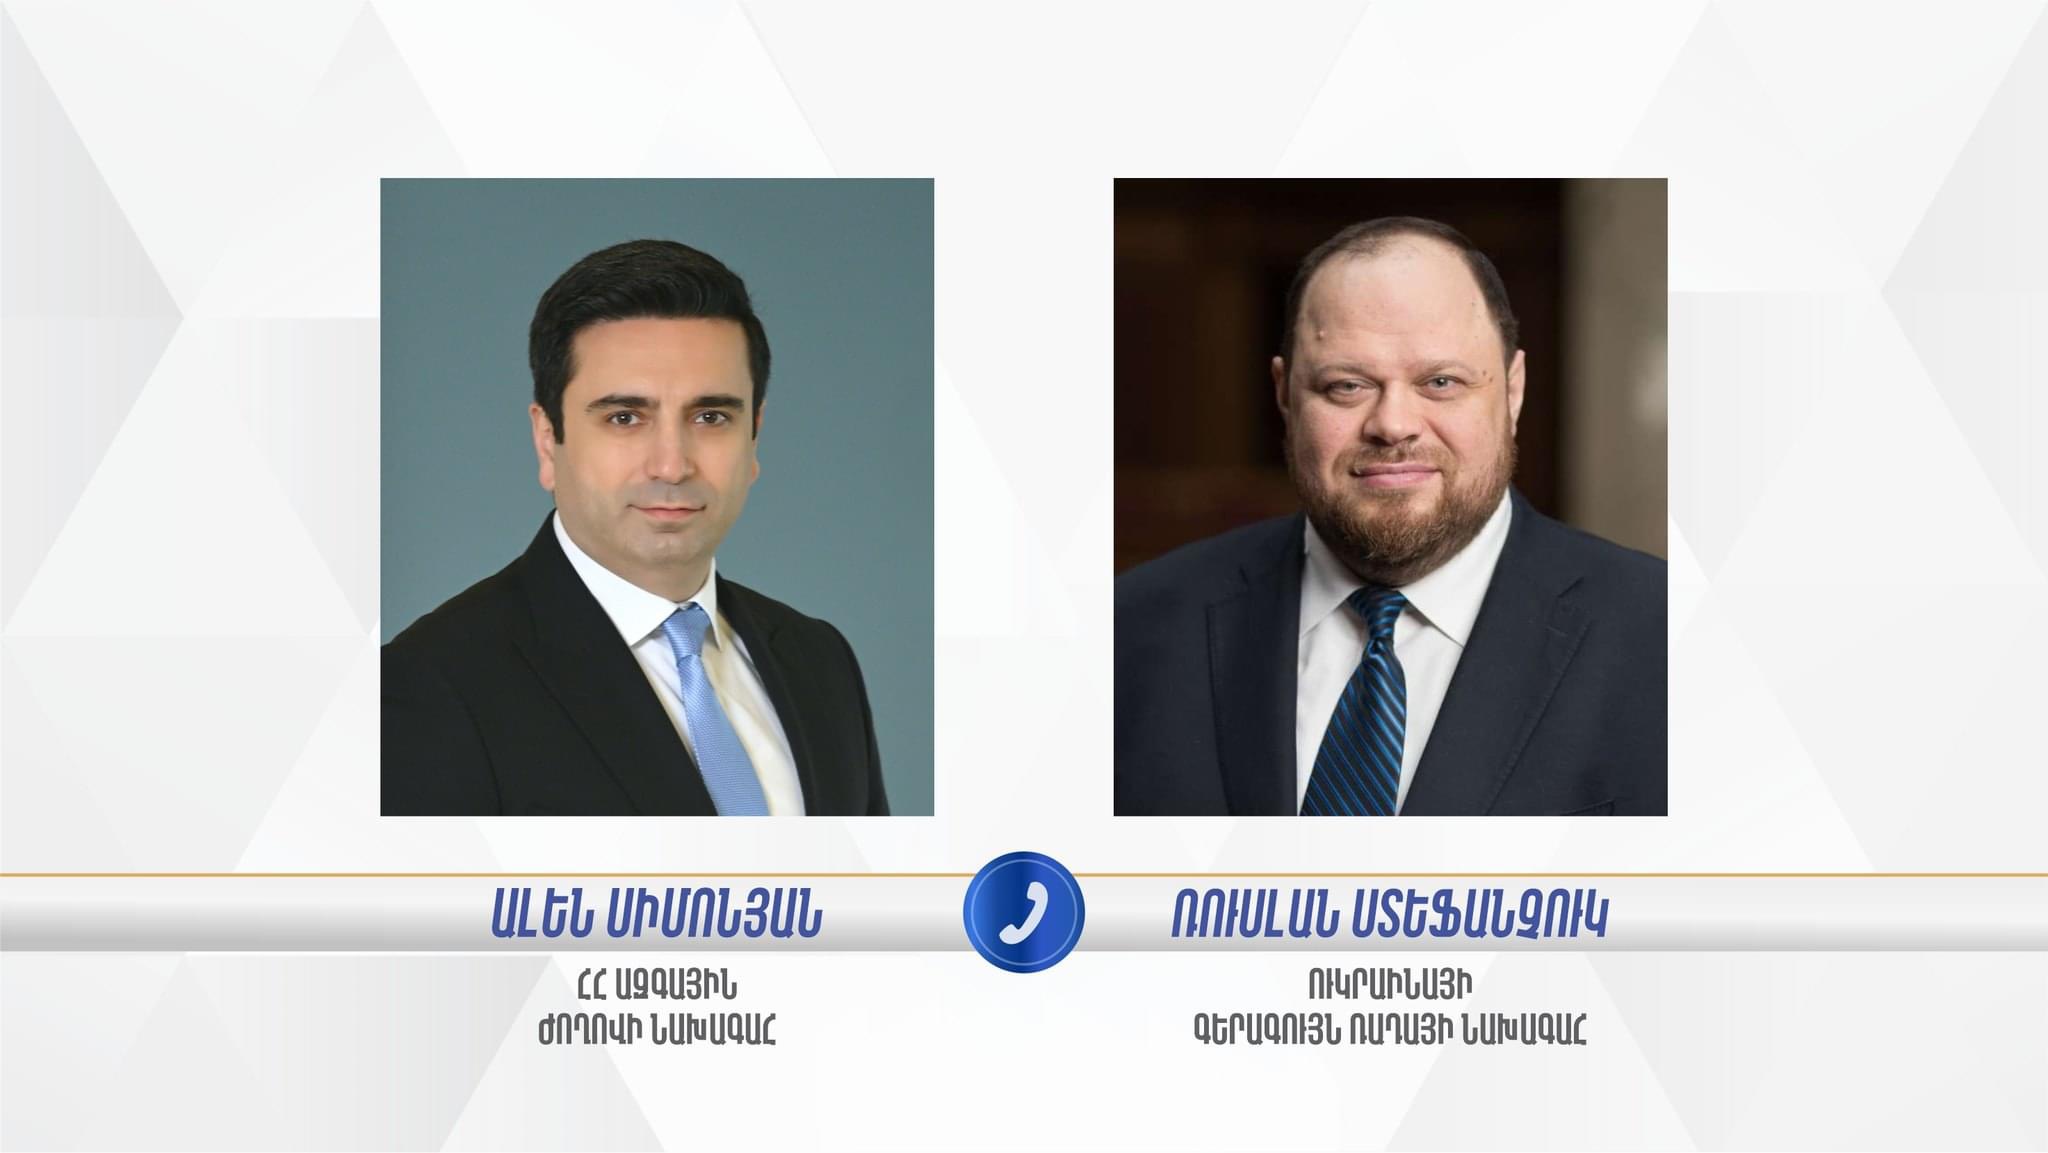 Ален Симонян и глава Верховной Рады обсудили безопасность на Южном Кавказе и Украине 